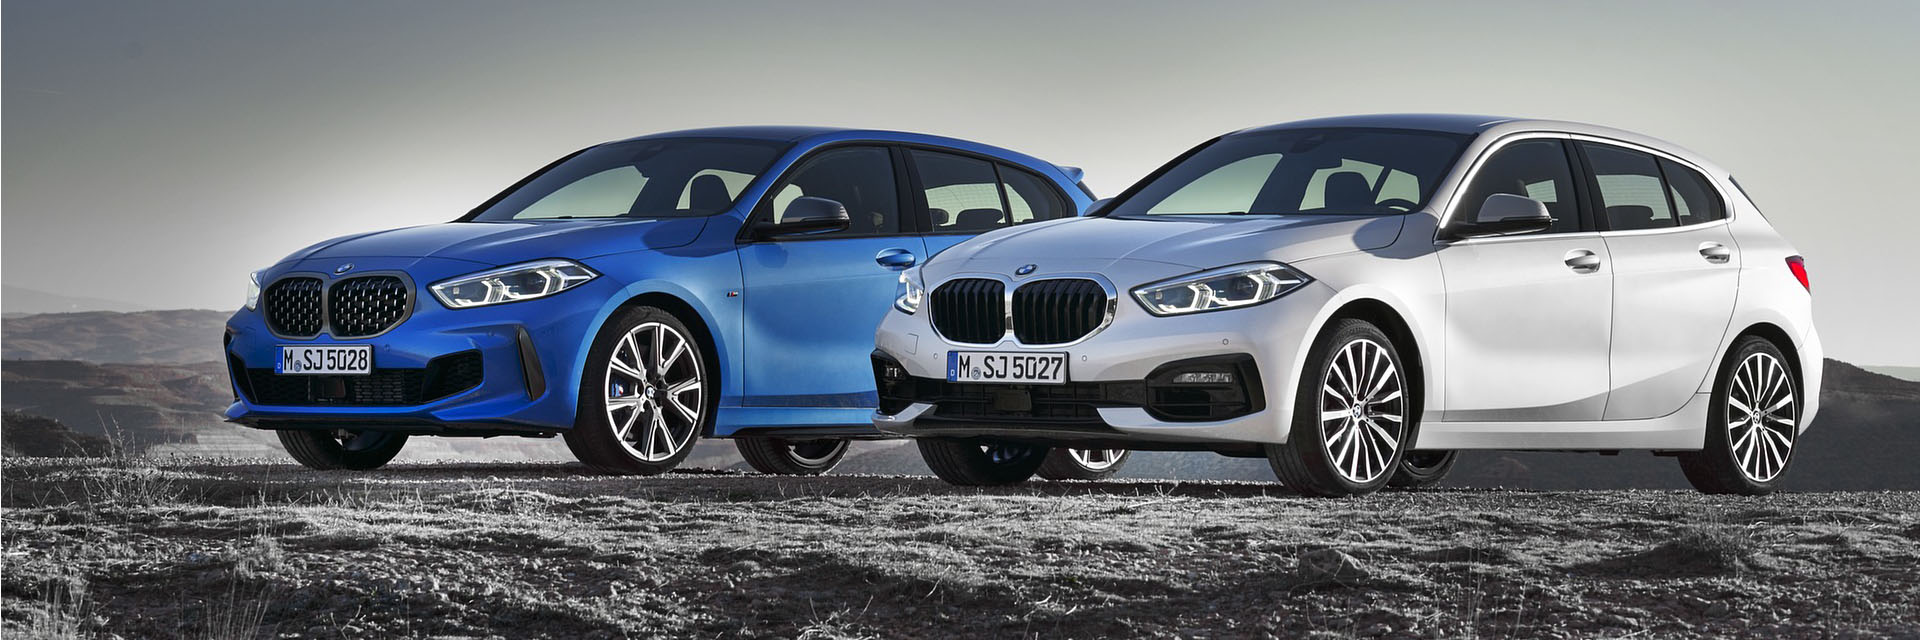 BMW, BMW SERIE 1, SERIE 1, carros novos, carros km0, carros serviço, carros usados